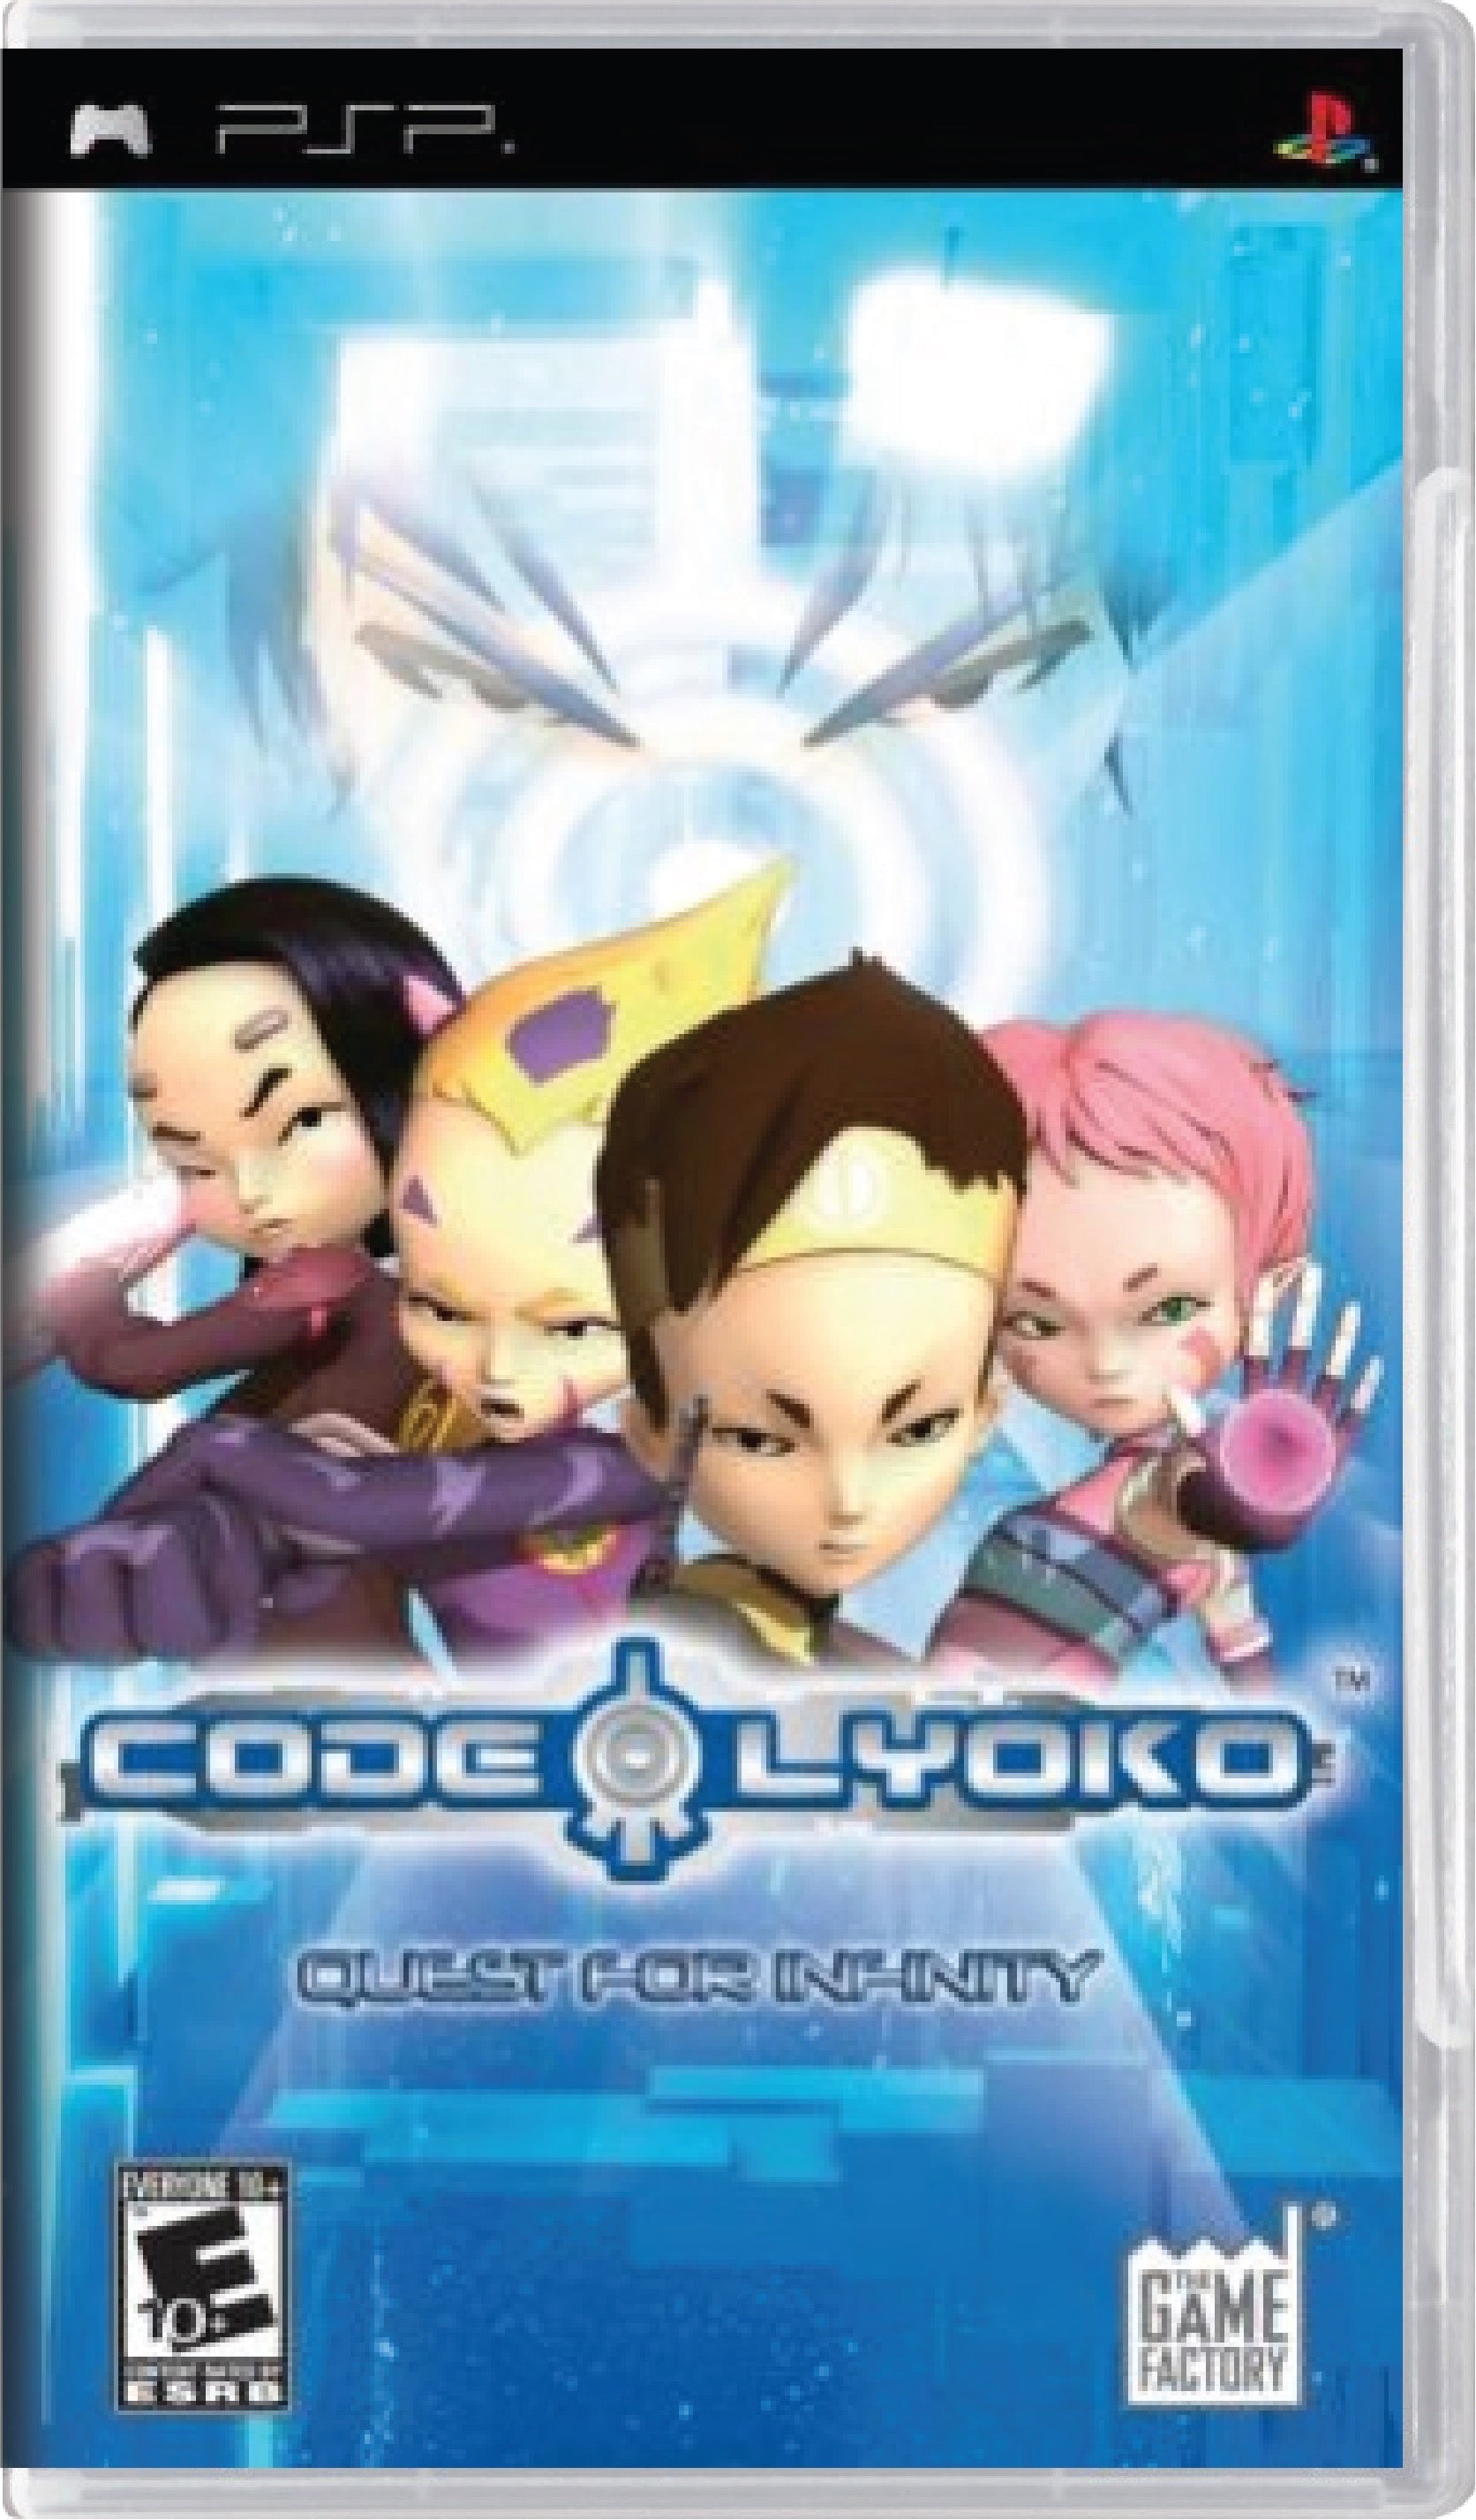 Code Lyoko Quest for Infinity Cover Art